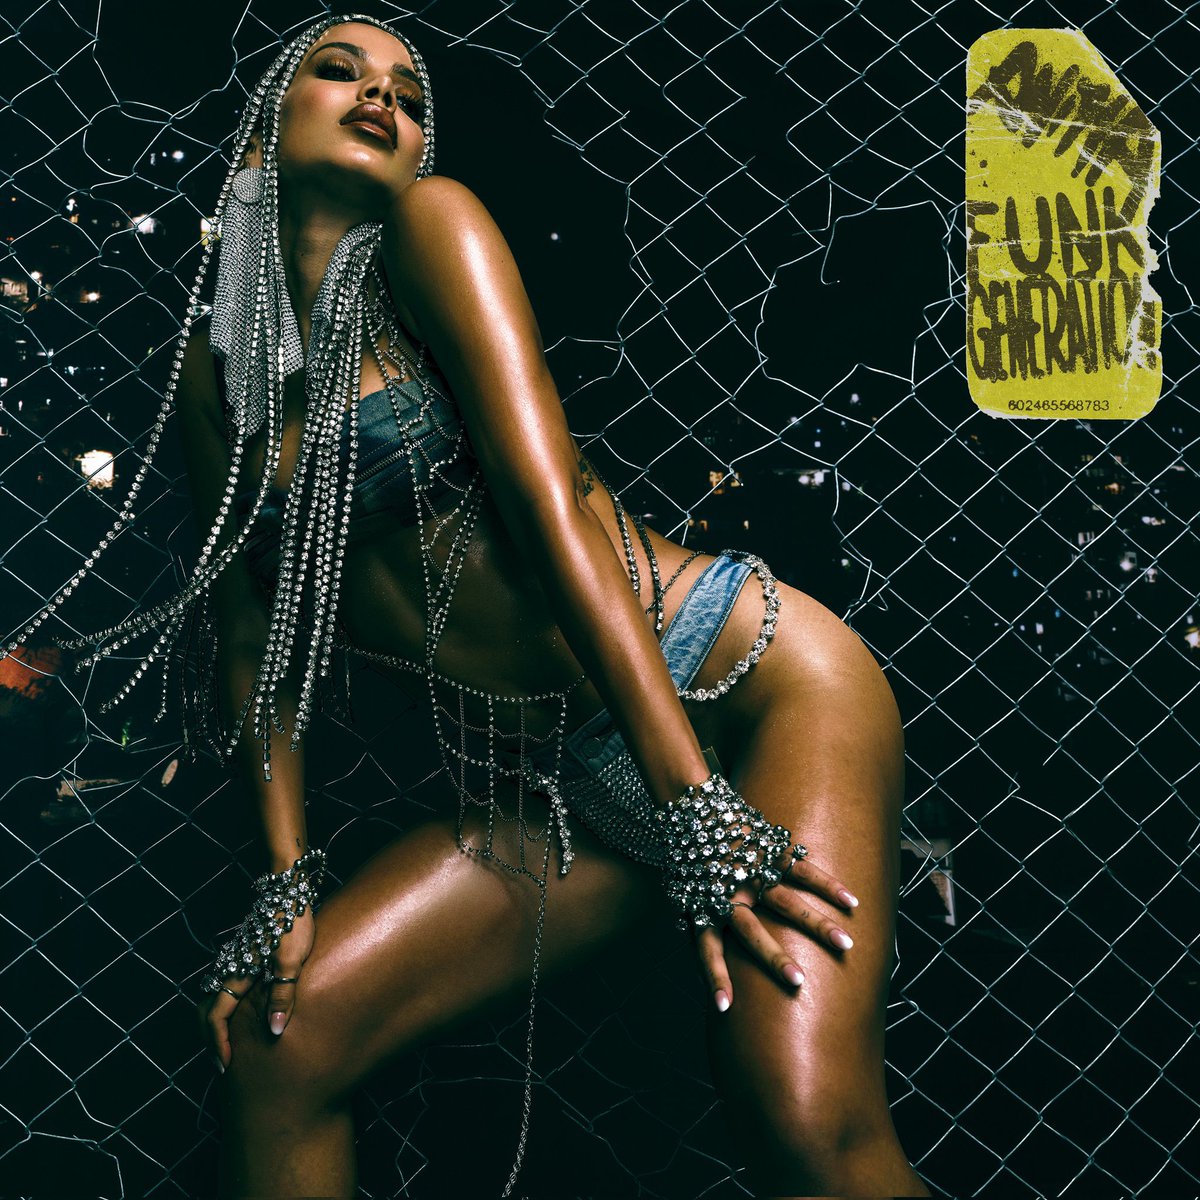 PLEBADA! @Anitta lanzará su próximo álbum titulado “Funk Generation” disponible el 26 de Abril. 

Haz Pre-Save: open.spotify.com/prerelease/3al…